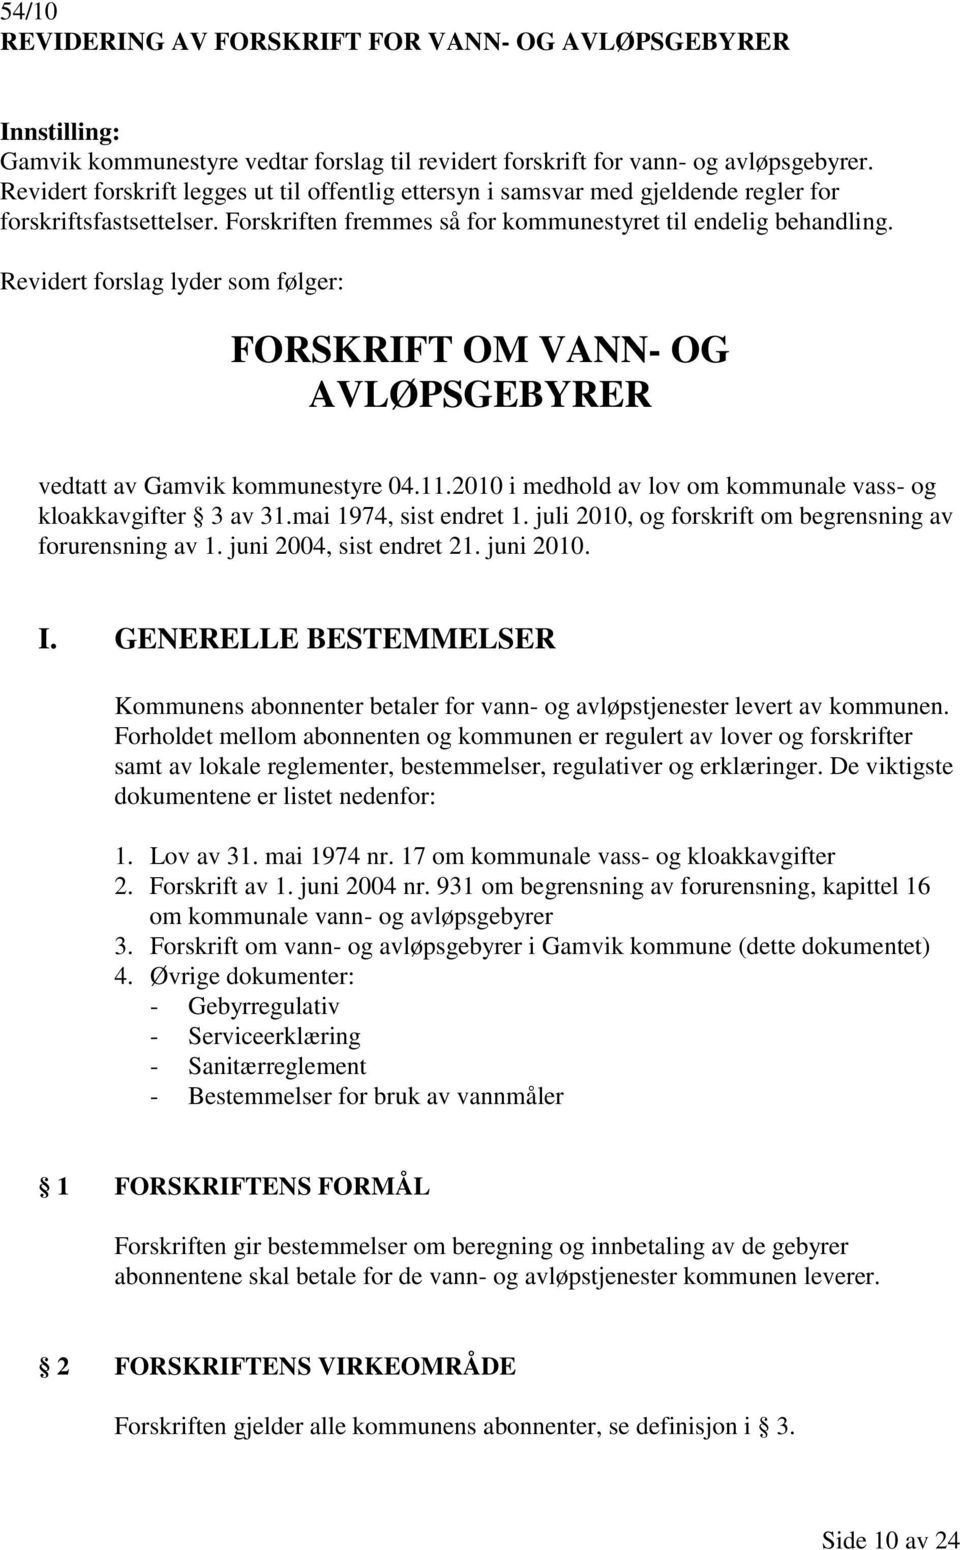 Revidert forslag lyder som følger: FORSKRIFT OM VANN- OG AVLØPSGEBYRER vedtatt av Gamvik kommunestyre 04.11.2010 i medhold av lov om kommunale vass- og kloakkavgifter 3 av 31.mai 1974, sist endret 1.